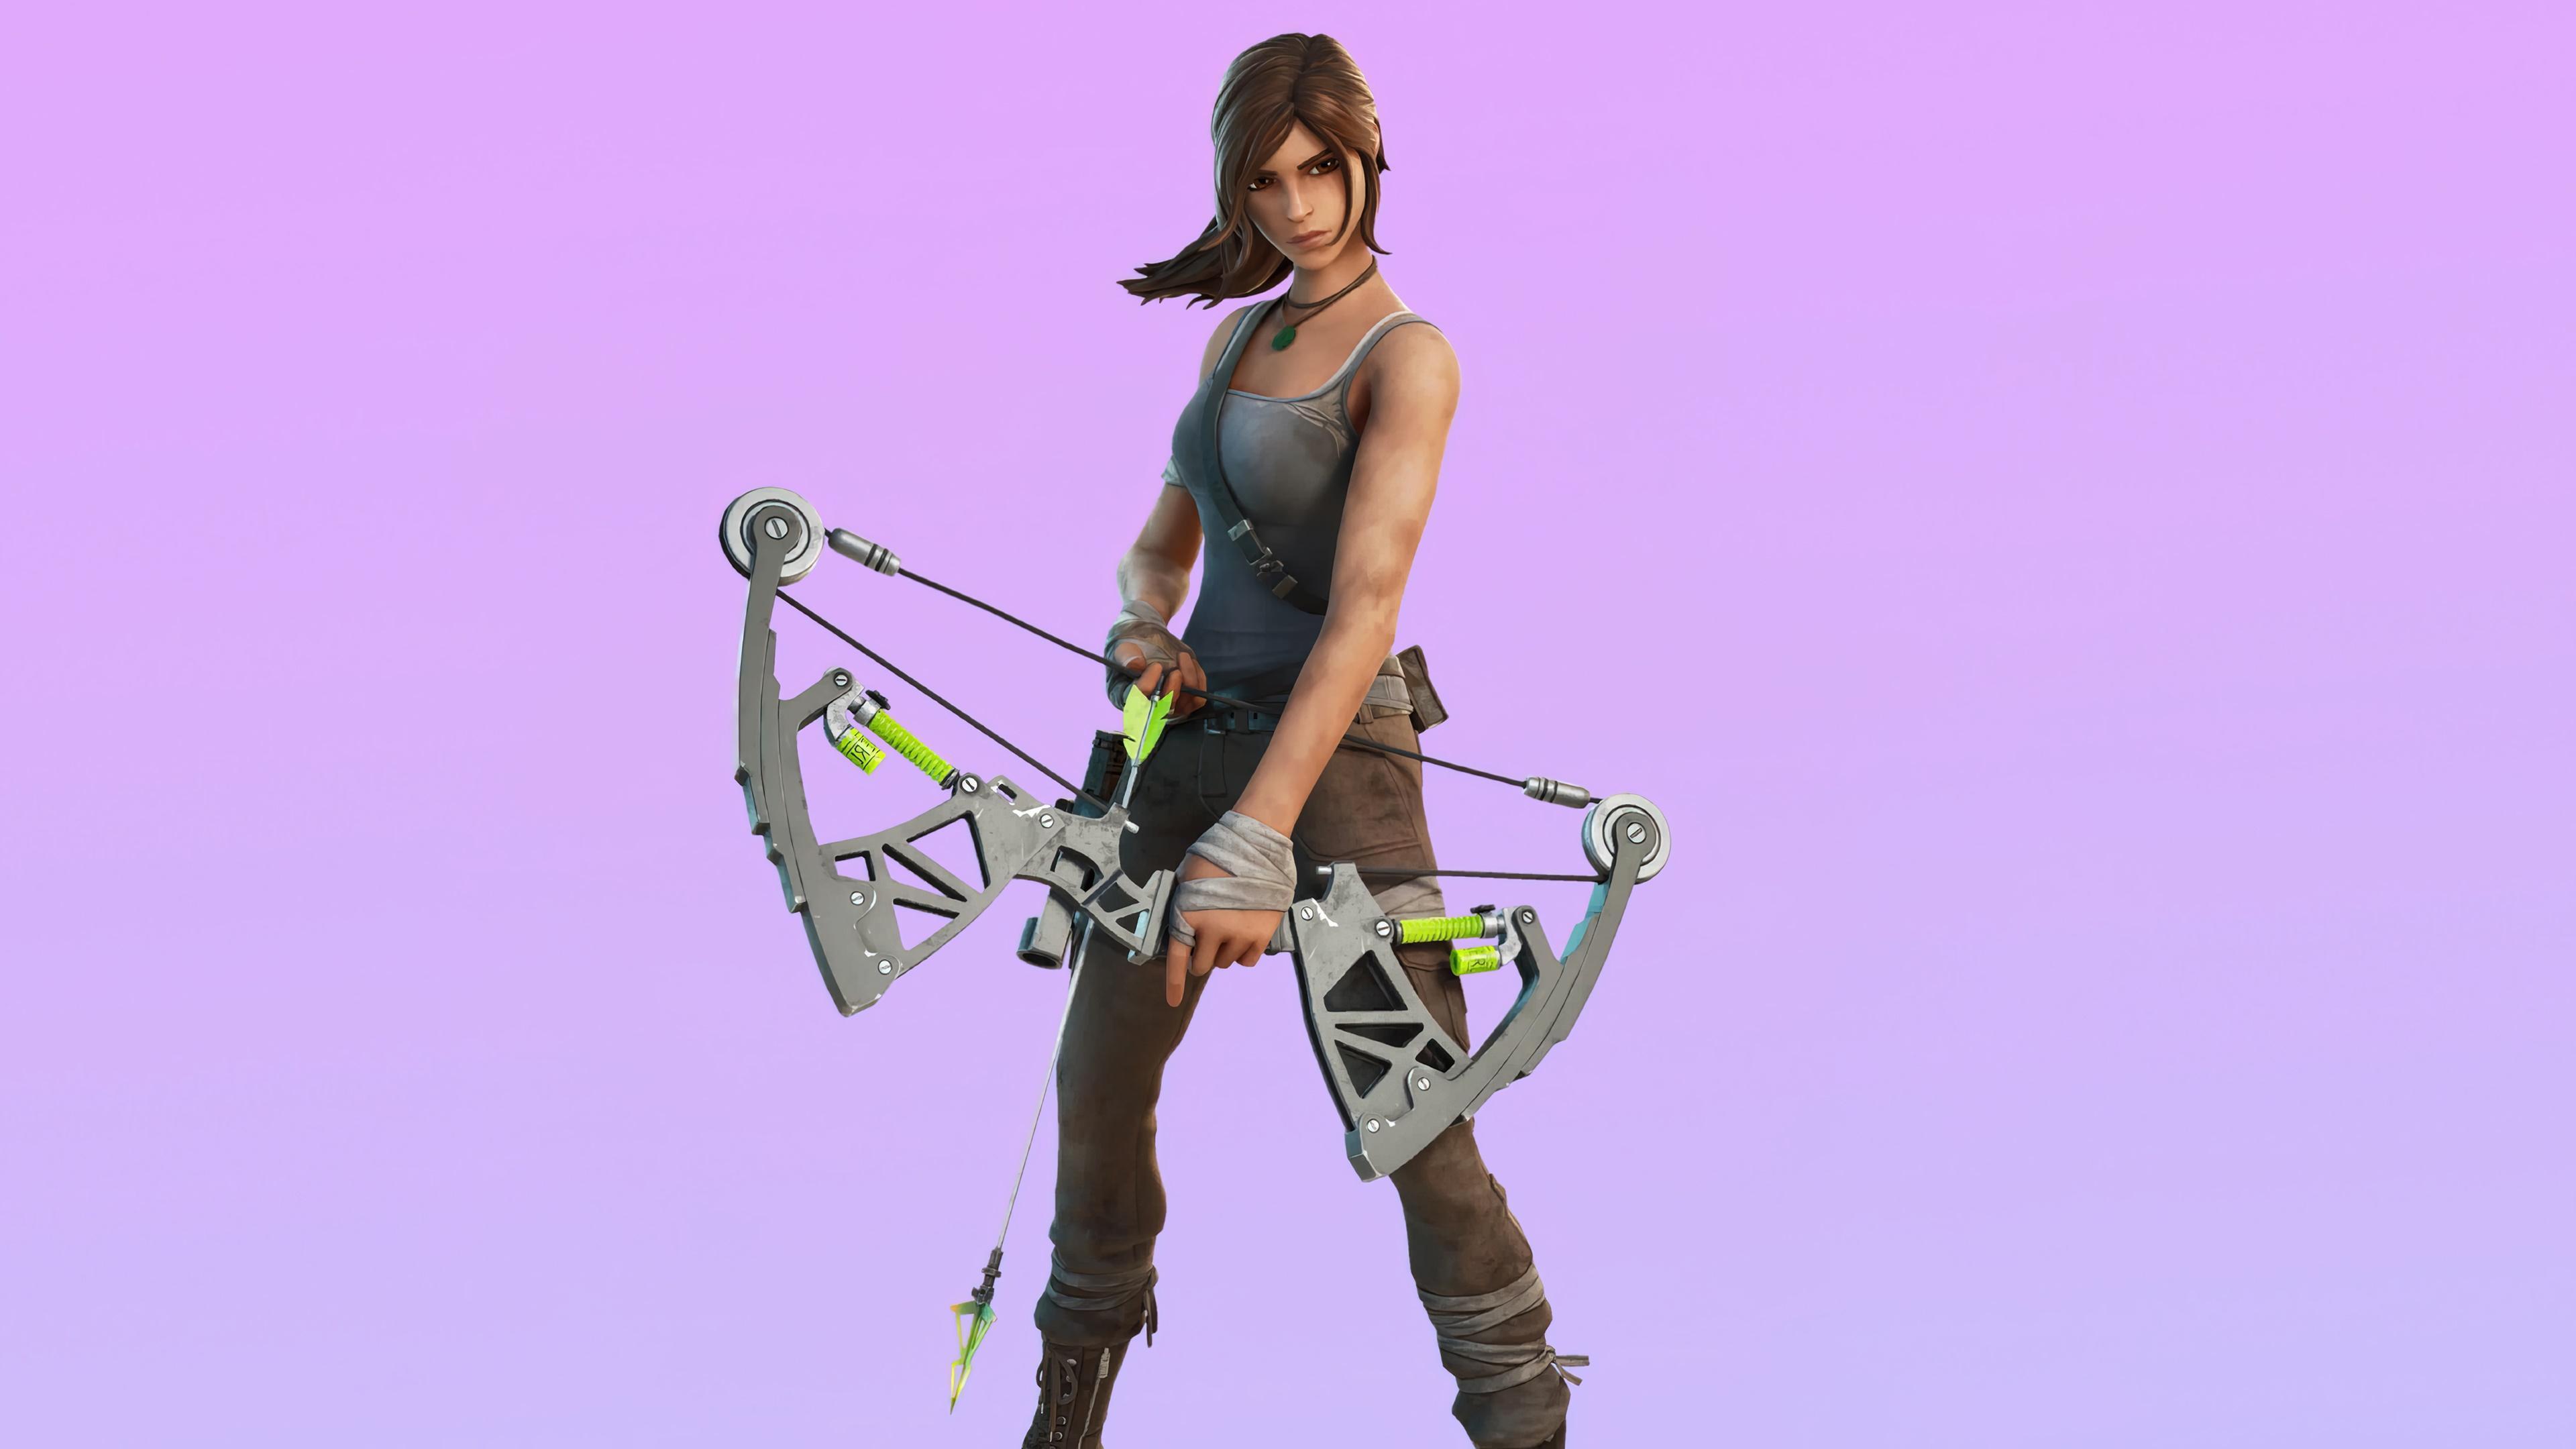 HD wallpaper, Lara Croft, 4K, Skin, Fortnite, Wallpaper, Hd, Outfit